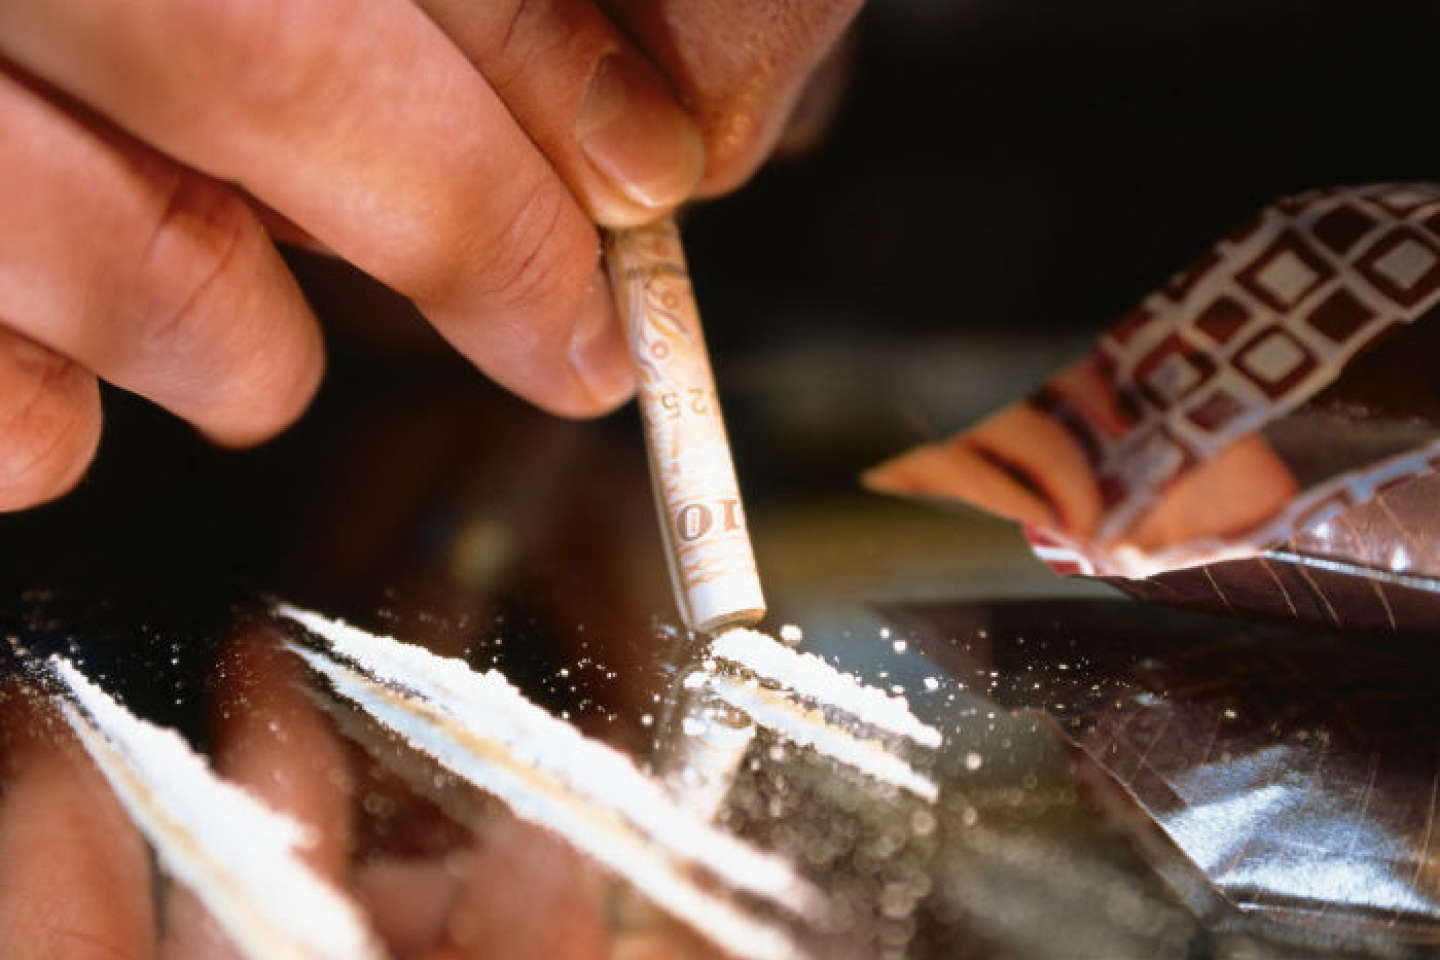 Les ravages des drogues au Maroc : Cocaïne et héroïne en famille